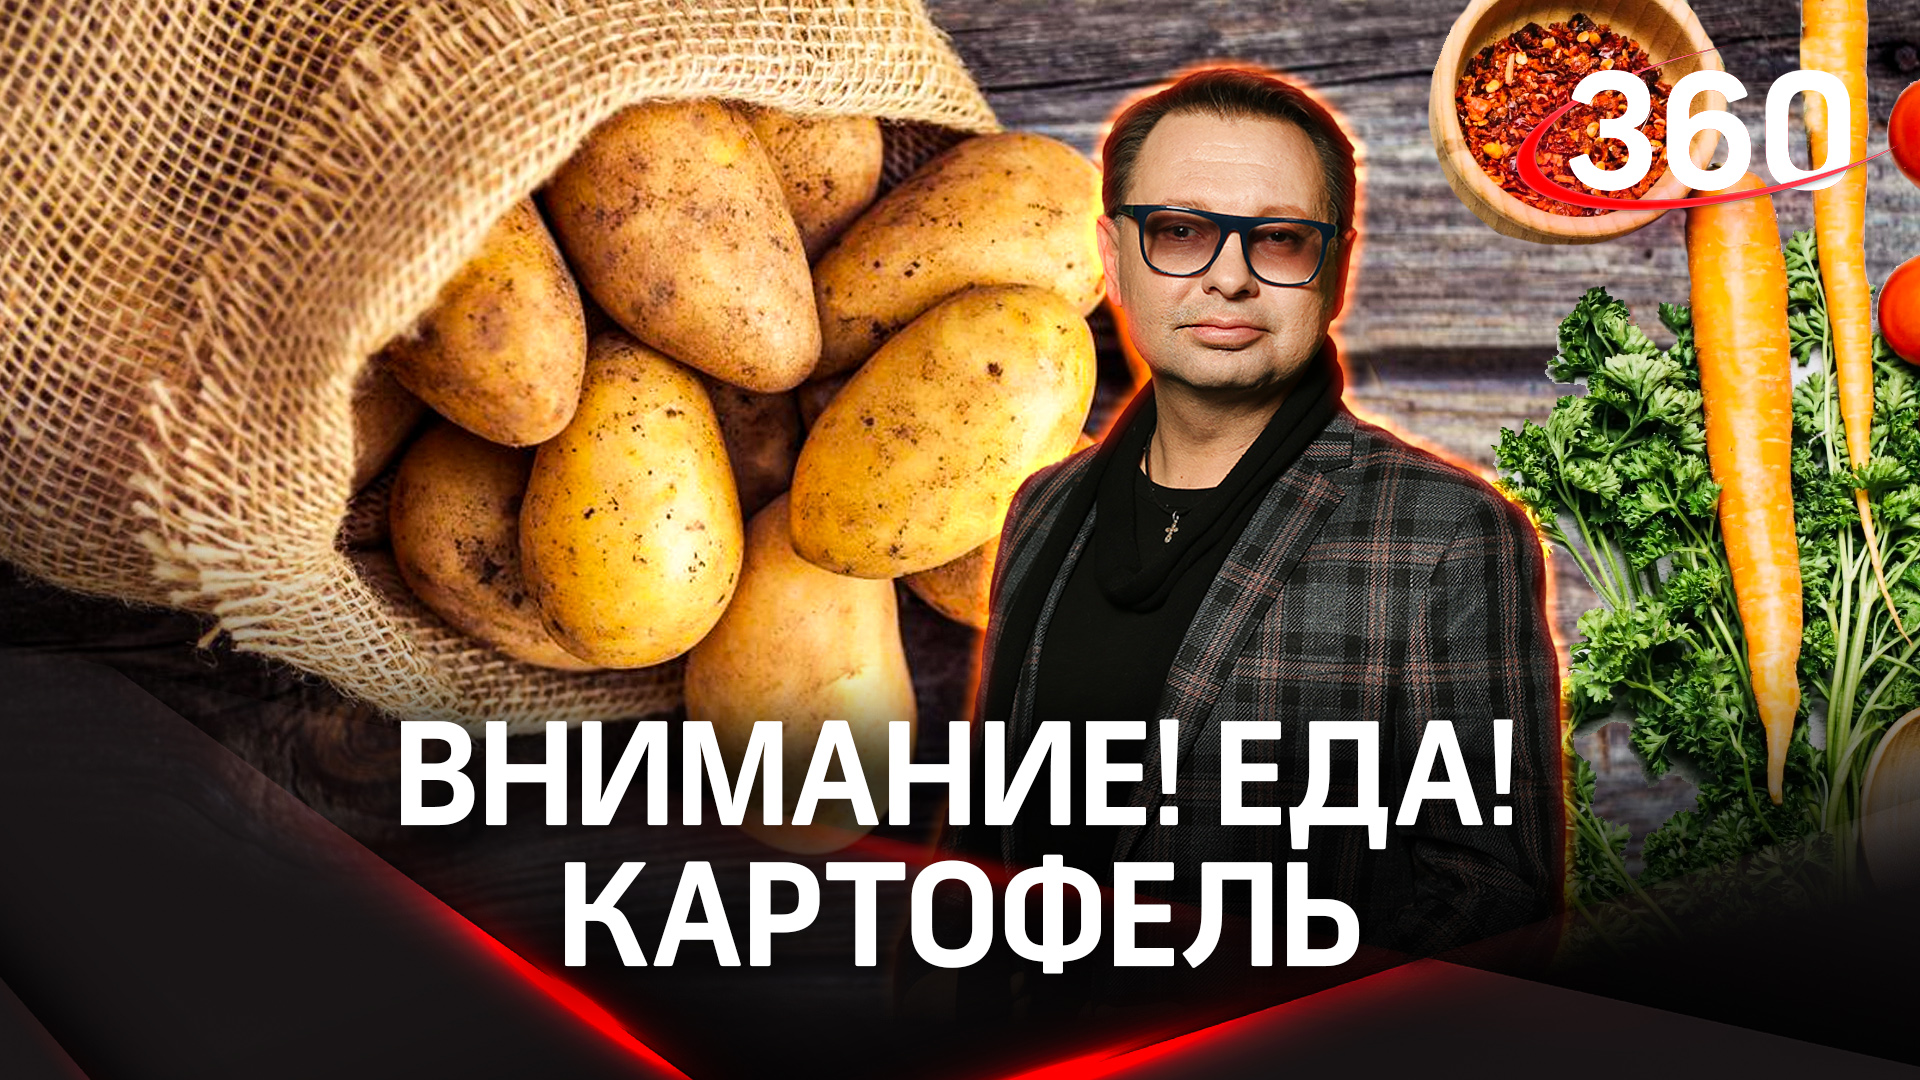 «Внимание! Еда!»: Как выбрать лучший картофель и топ-5 марок маринованных огурцов | Максим Беспалов